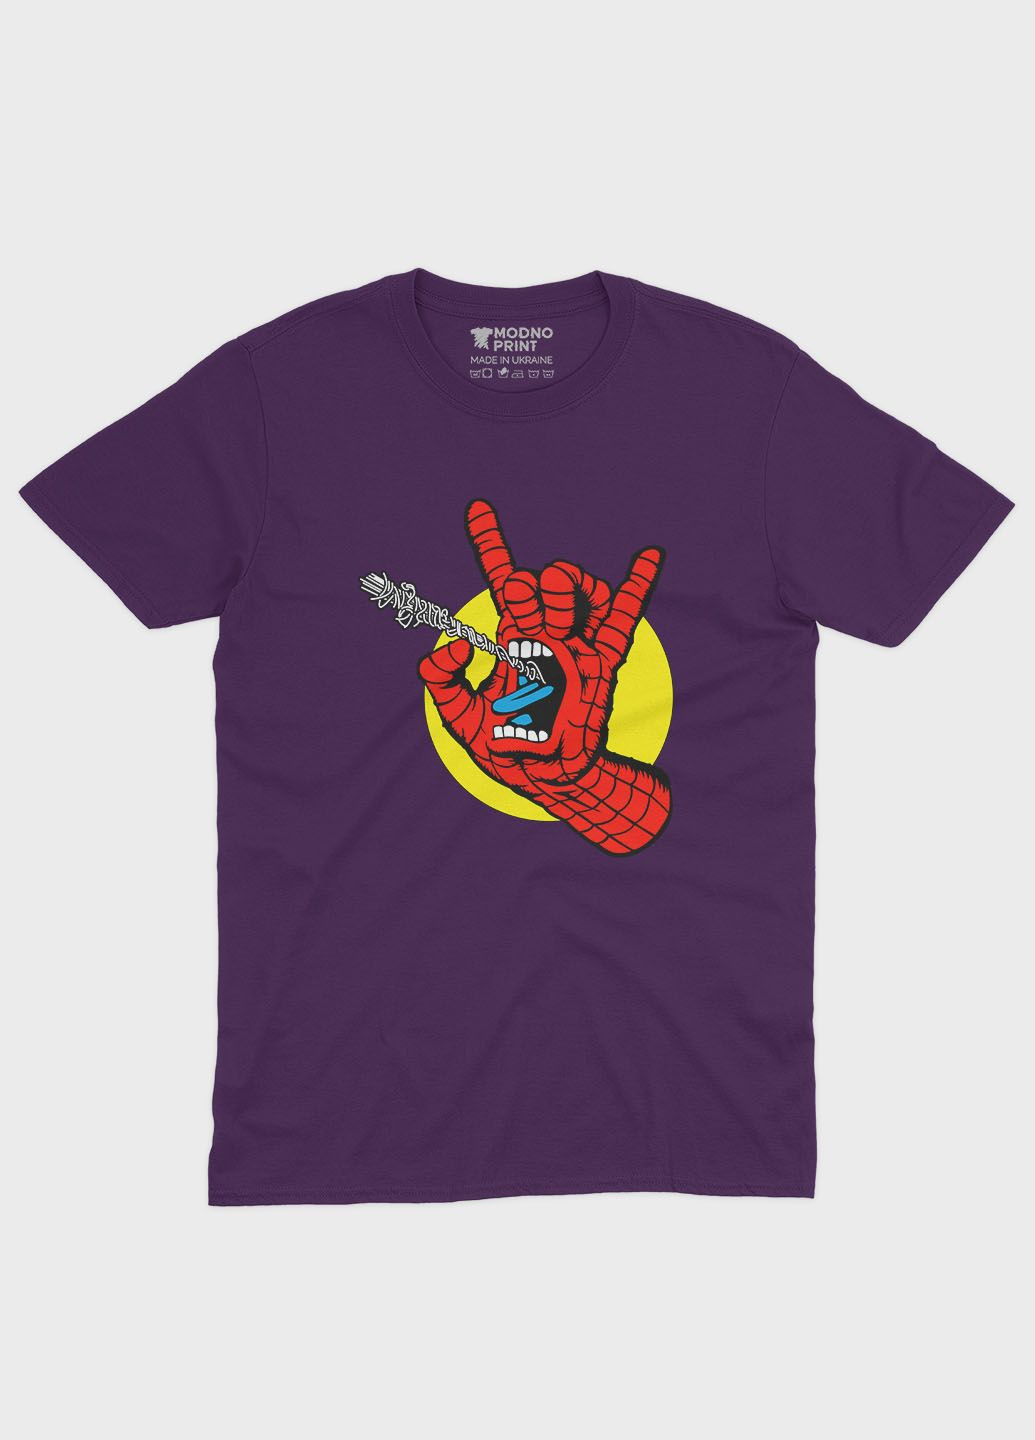 Фиолетовая демисезонная футболка для девочки с принтом супергероя - человек-паук (ts001-1-dby-006-014-103-g) Modno